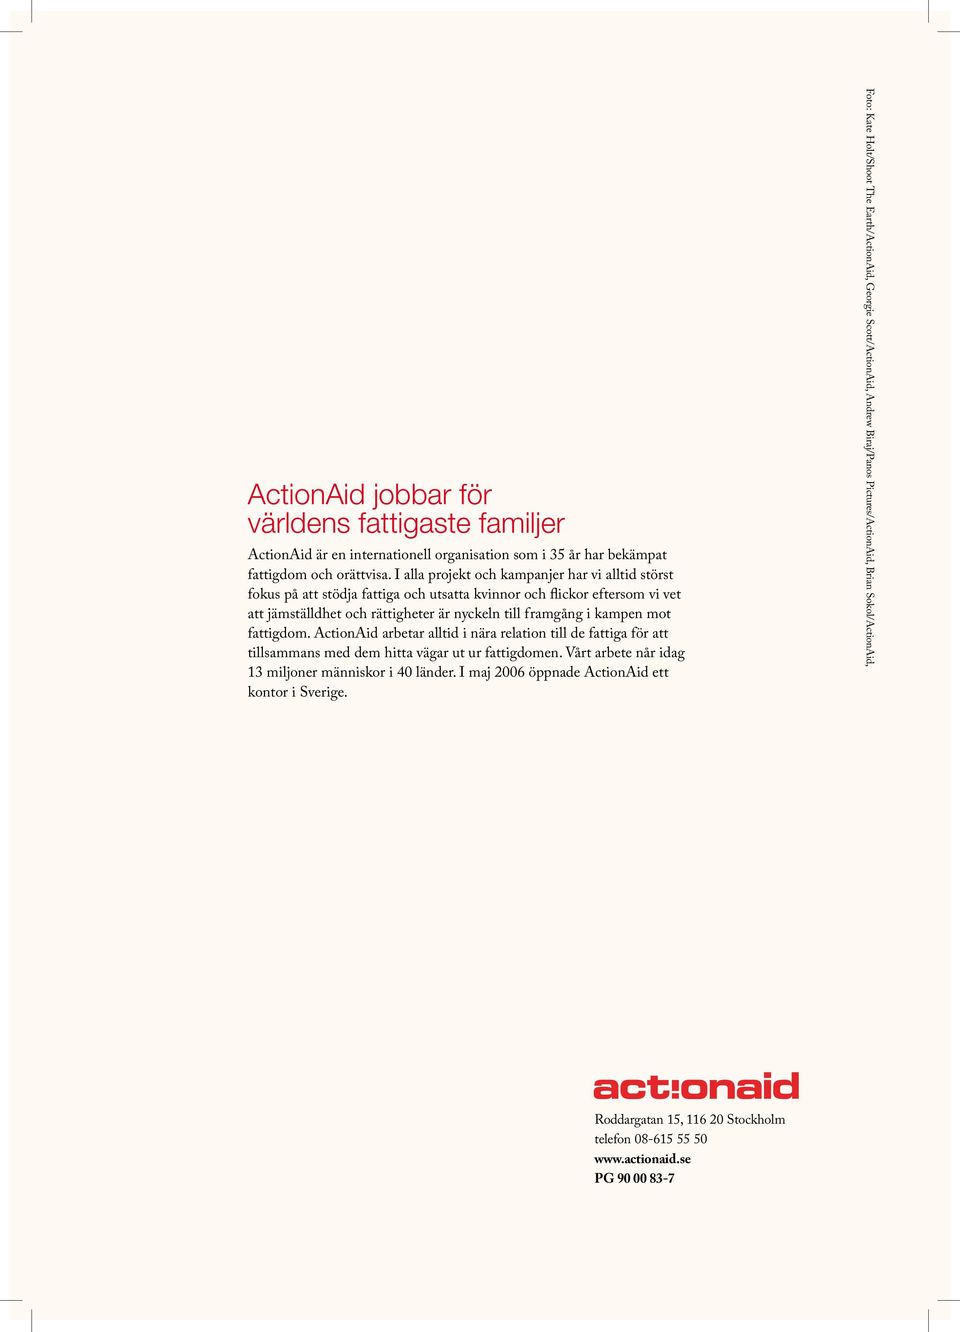 fattigdom. ActionAid arbetar alltid i nära relation till de fattiga för att tillsammans med dem hitta vägar ut ur fattigdomen. Vårt arbete når idag 13 miljoner människor i 40 länder.